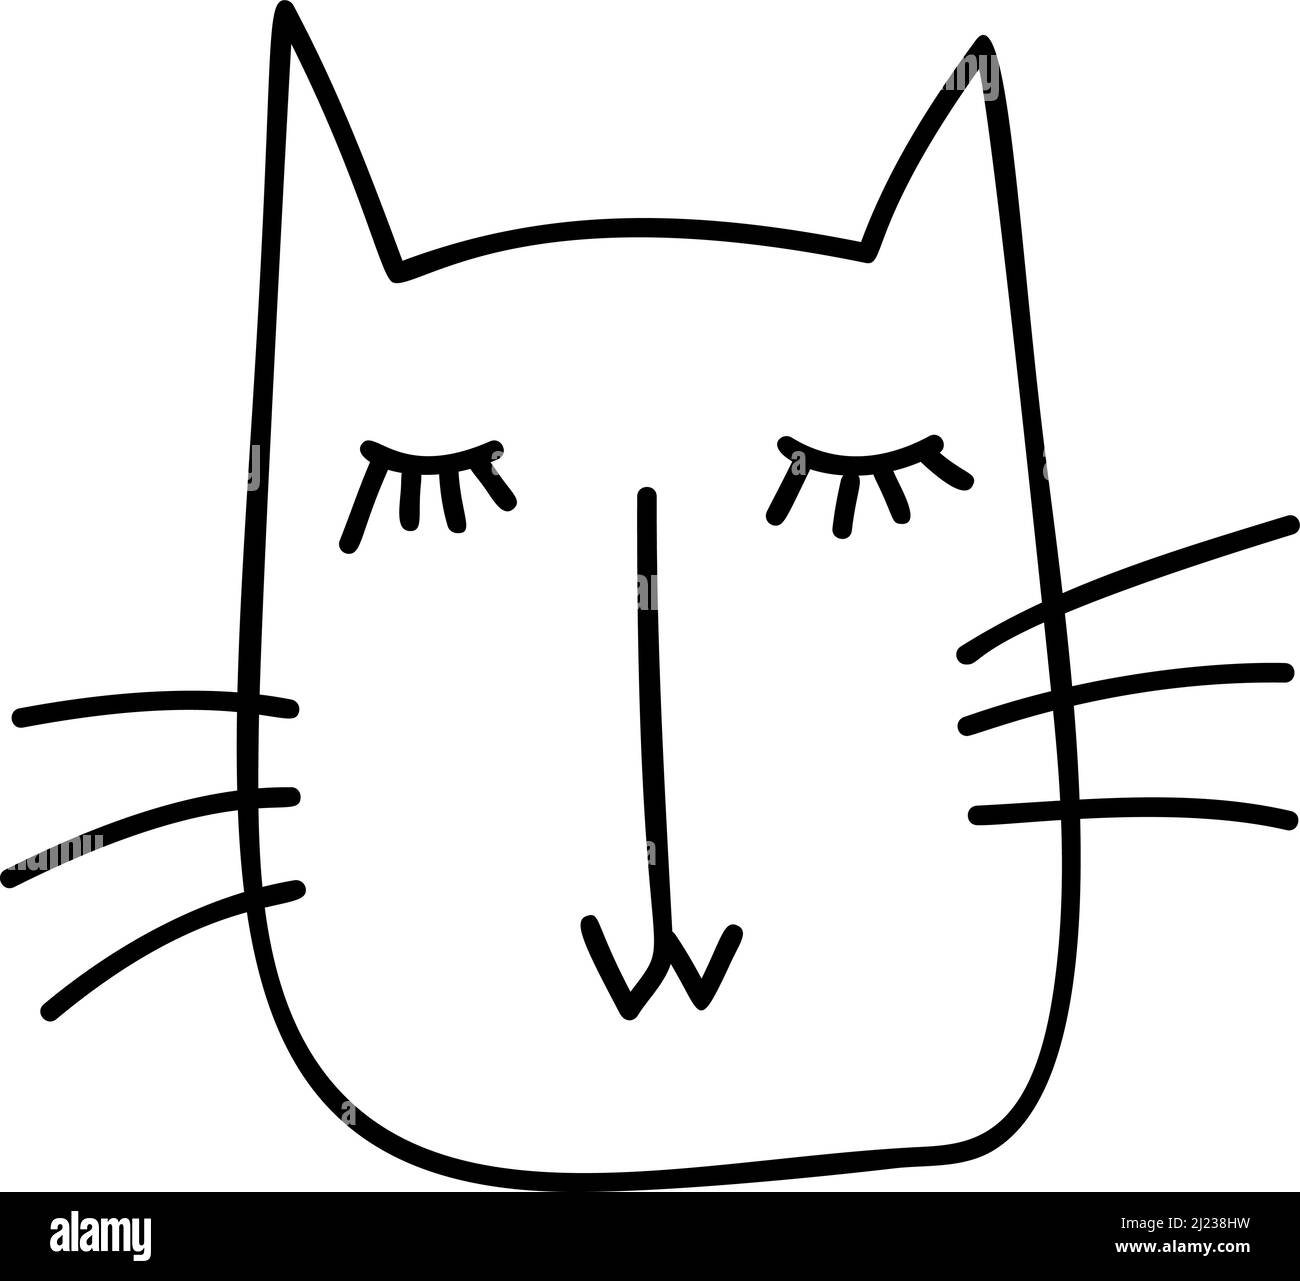 Lindo bebé línea negra cara de gato escandinavo. Ilustración dibujada a mano de un plano. Elemento de diseño de camiseta, textiles para el hogar, papel para envolver, niños Ilustración del Vector